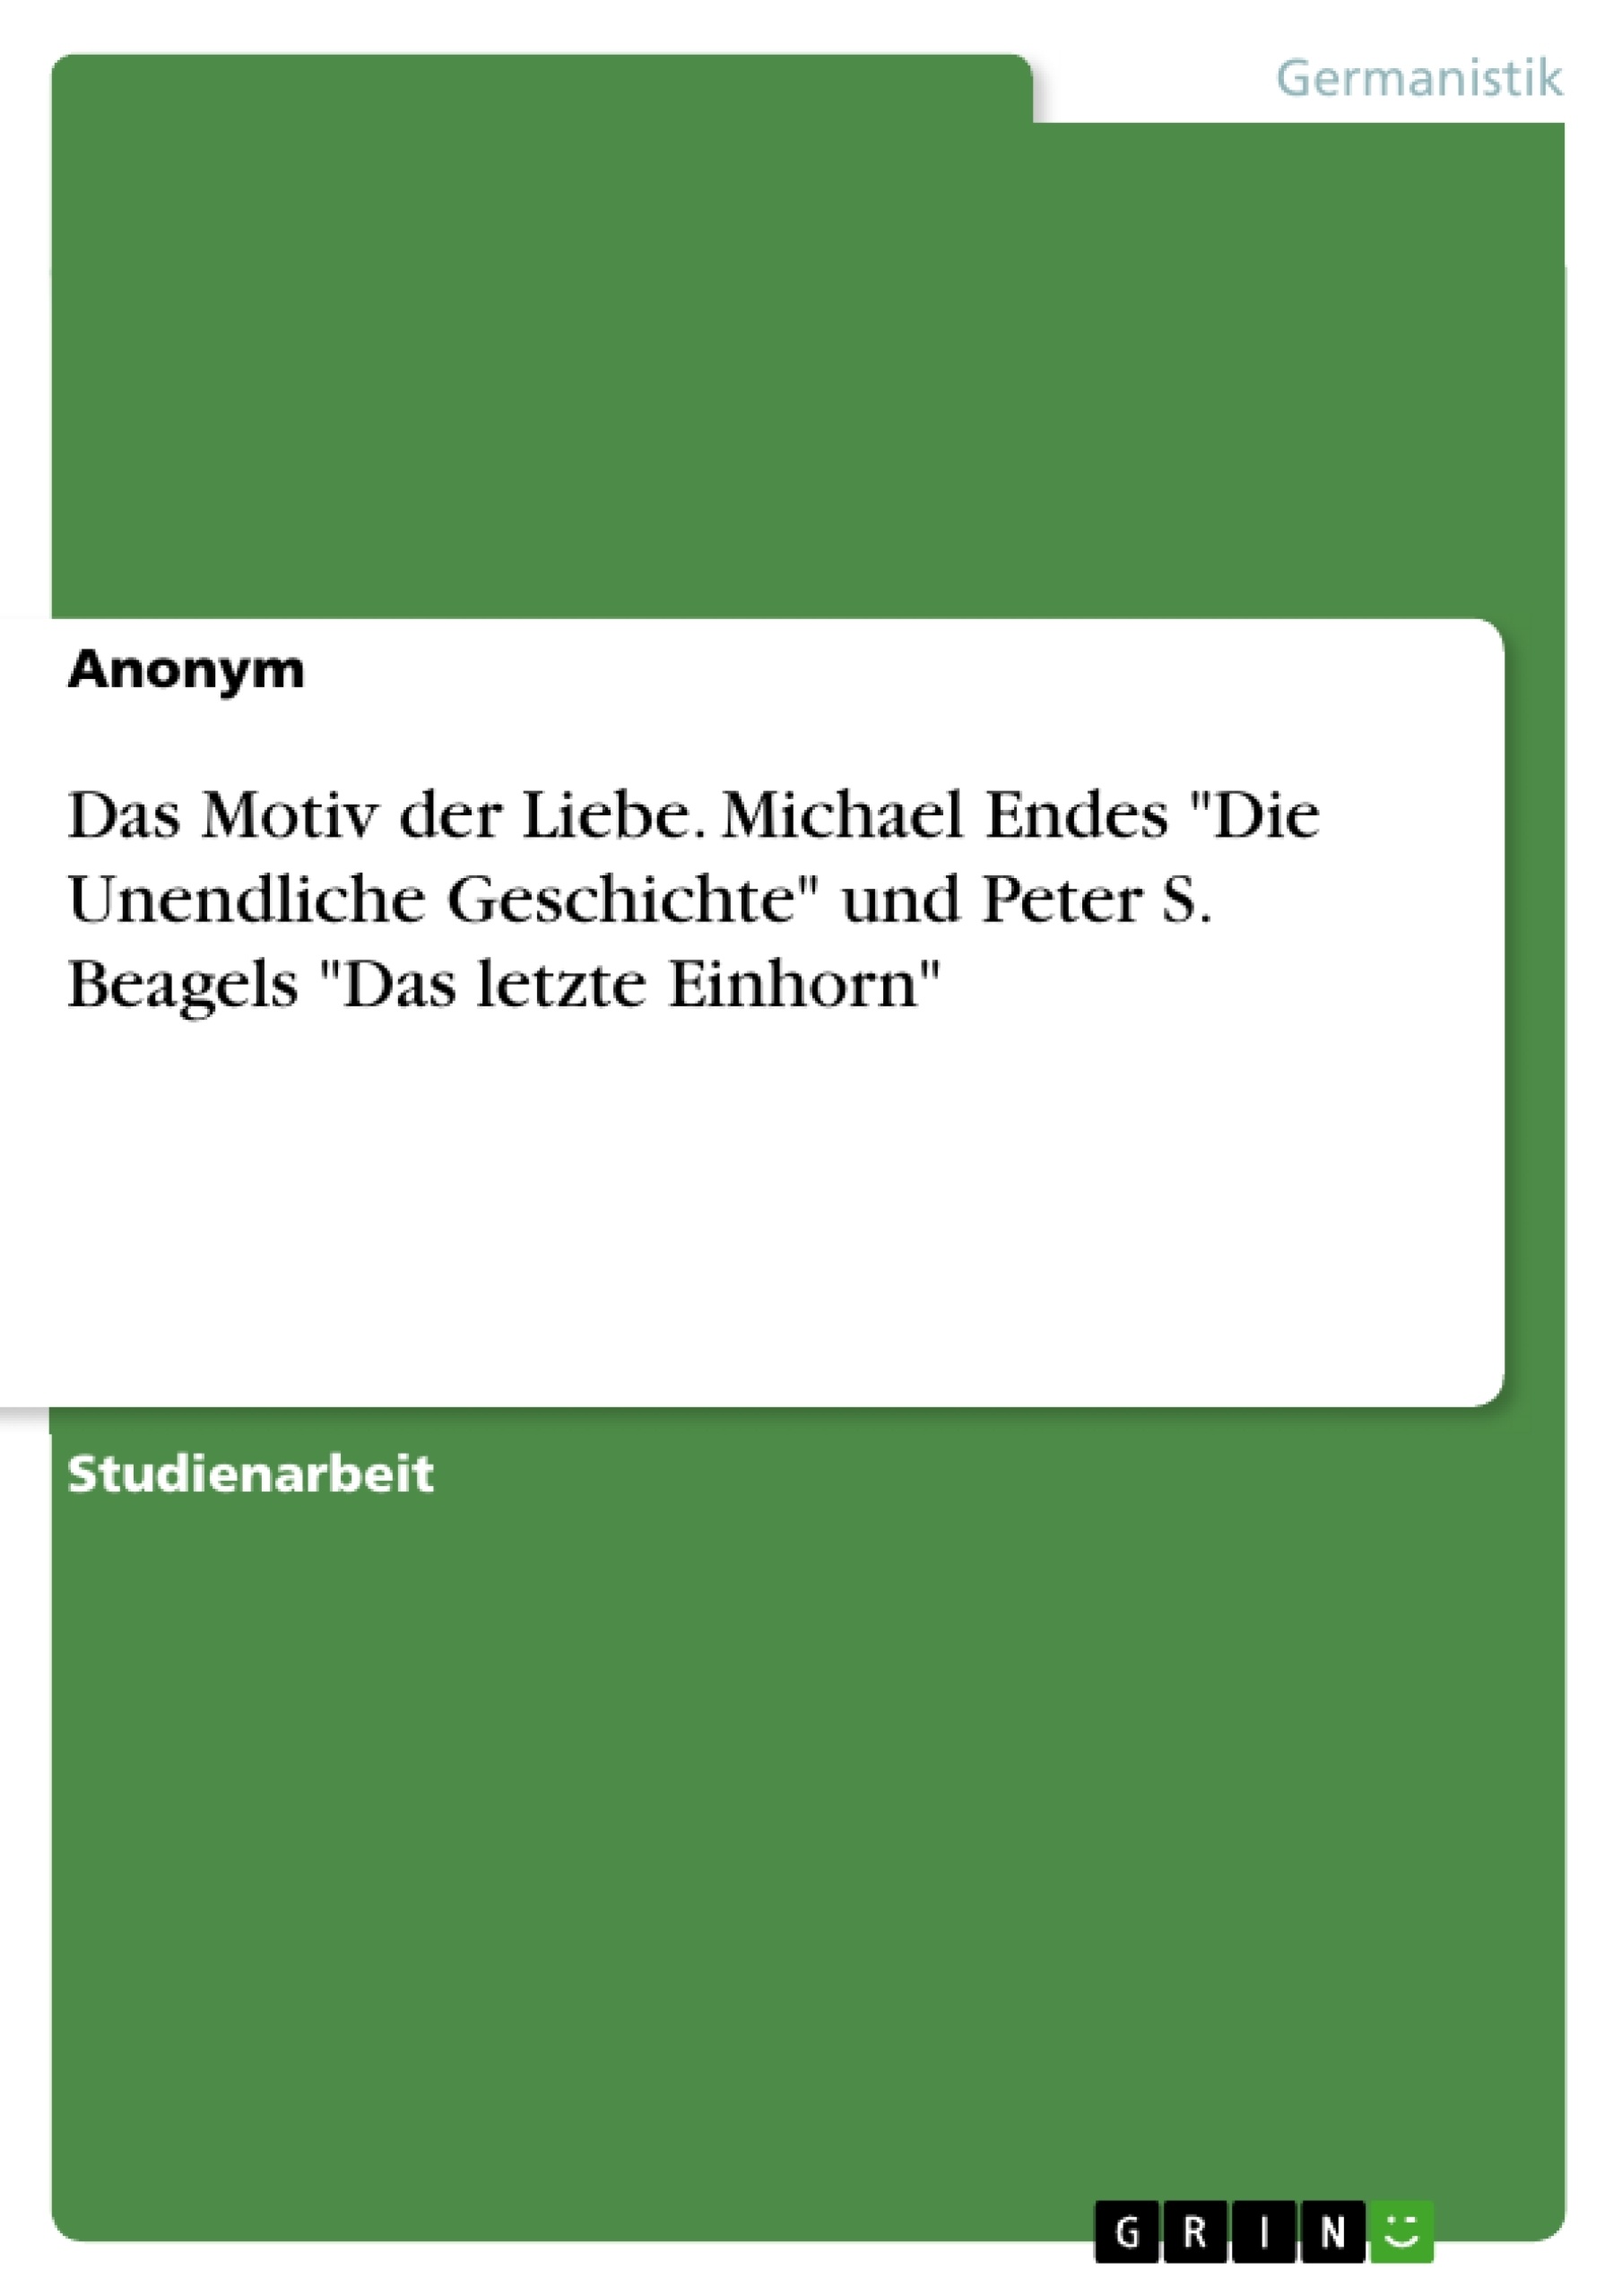 Title: Das Motiv der Liebe. Michael Endes "Die Unendliche Geschichte" und Peter S. Beagels "Das letzte Einhorn"